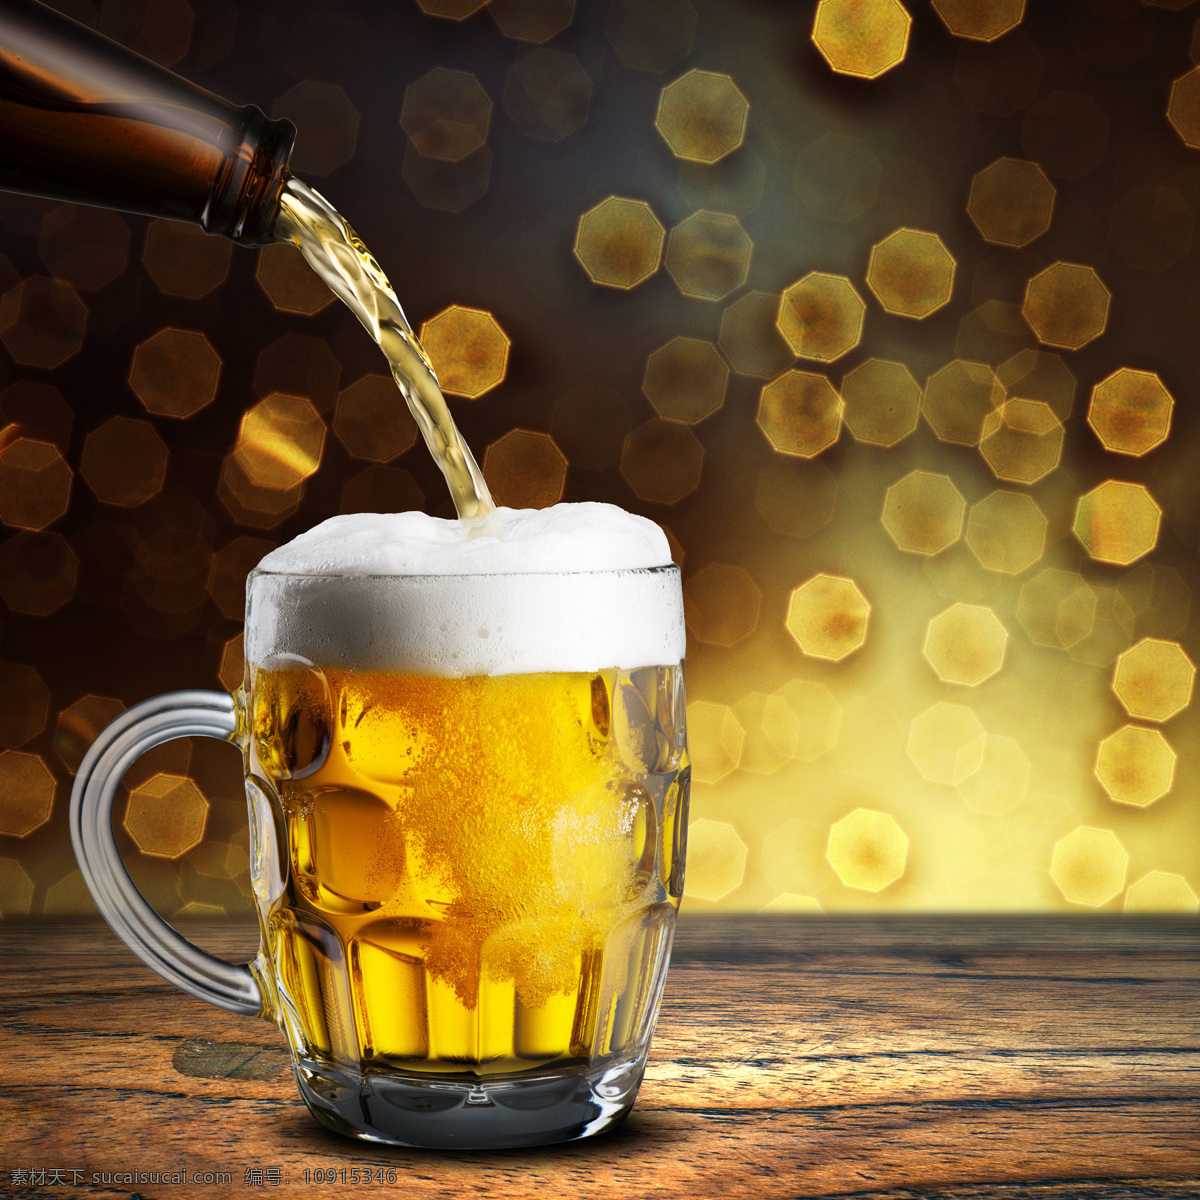 啤酒酿造 啤酒花 beer 酒水 冰镇啤酒 小麦 麦穗 德国啤酒 啤酒广告 啤酒工艺 餐饮美食 饮料酒水